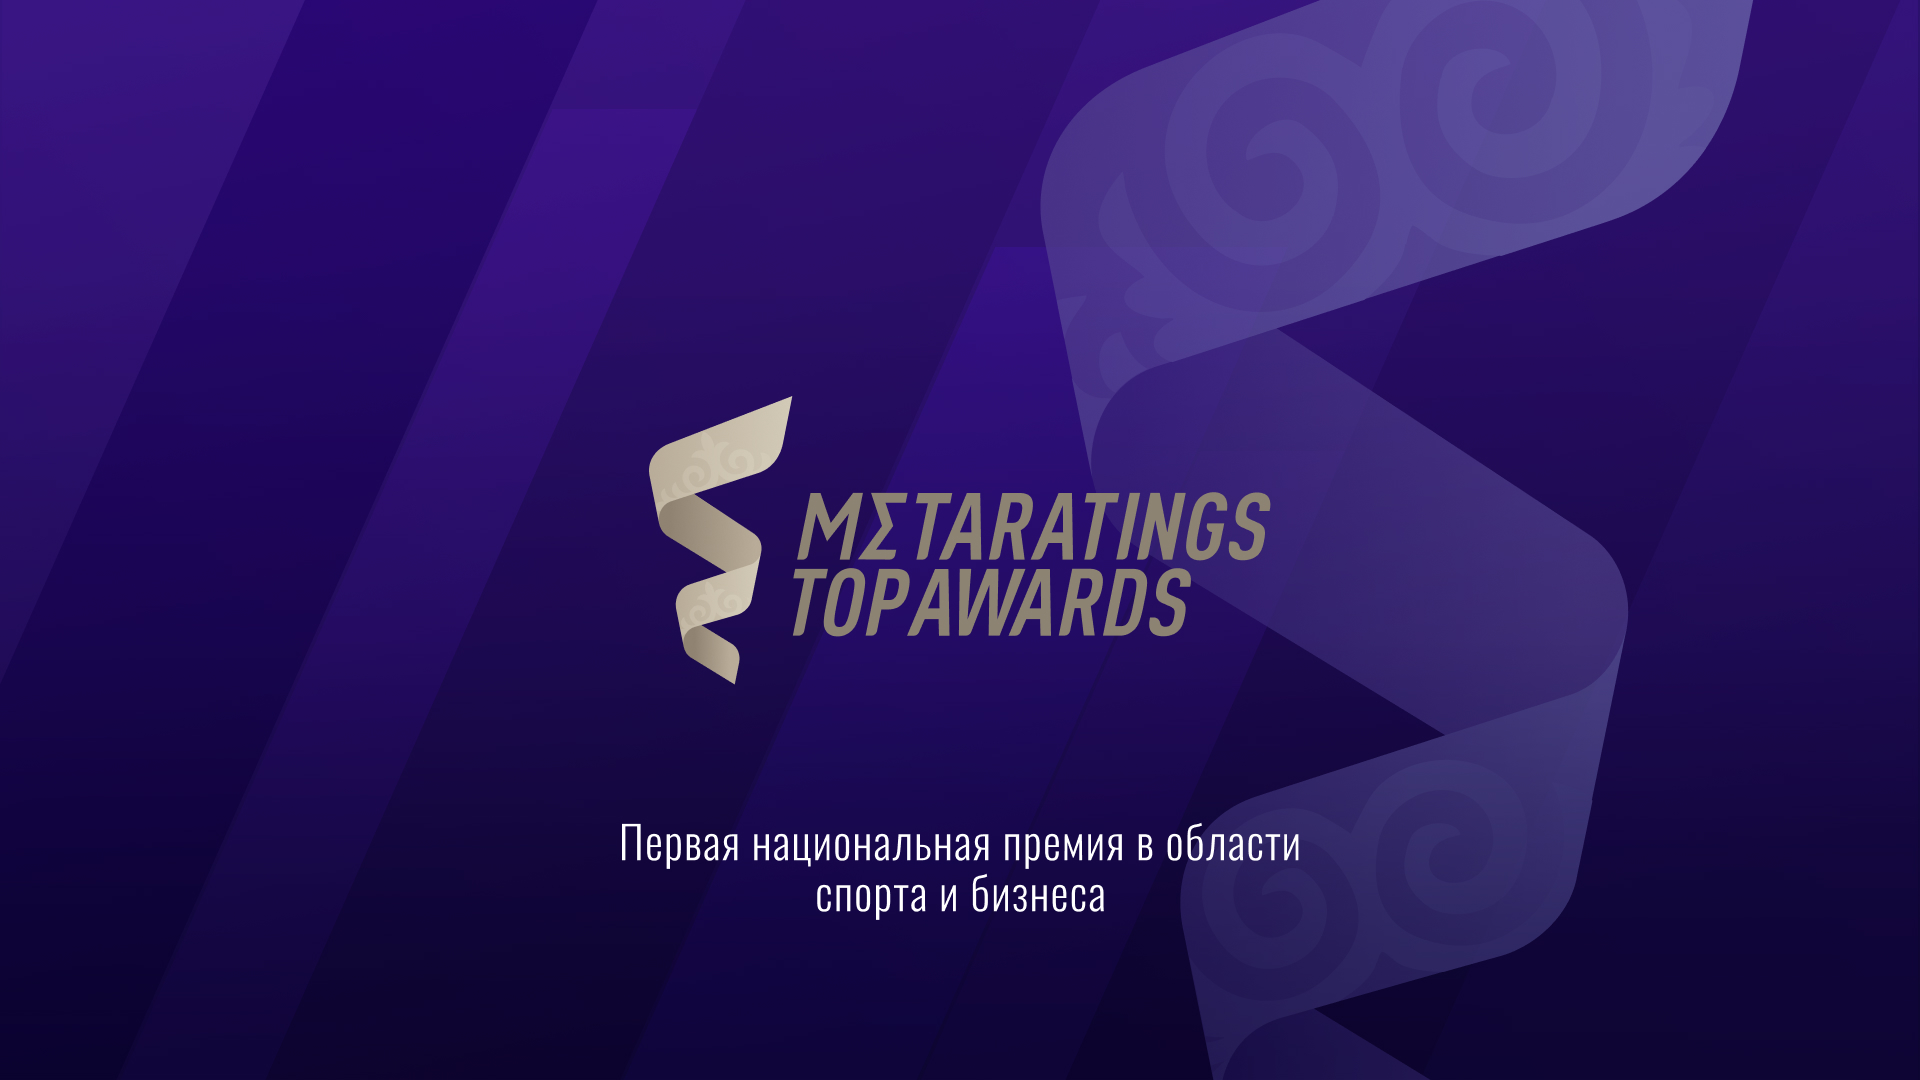 Стали известны победители спортивной премии Metaratings Top Awards в Казахстане